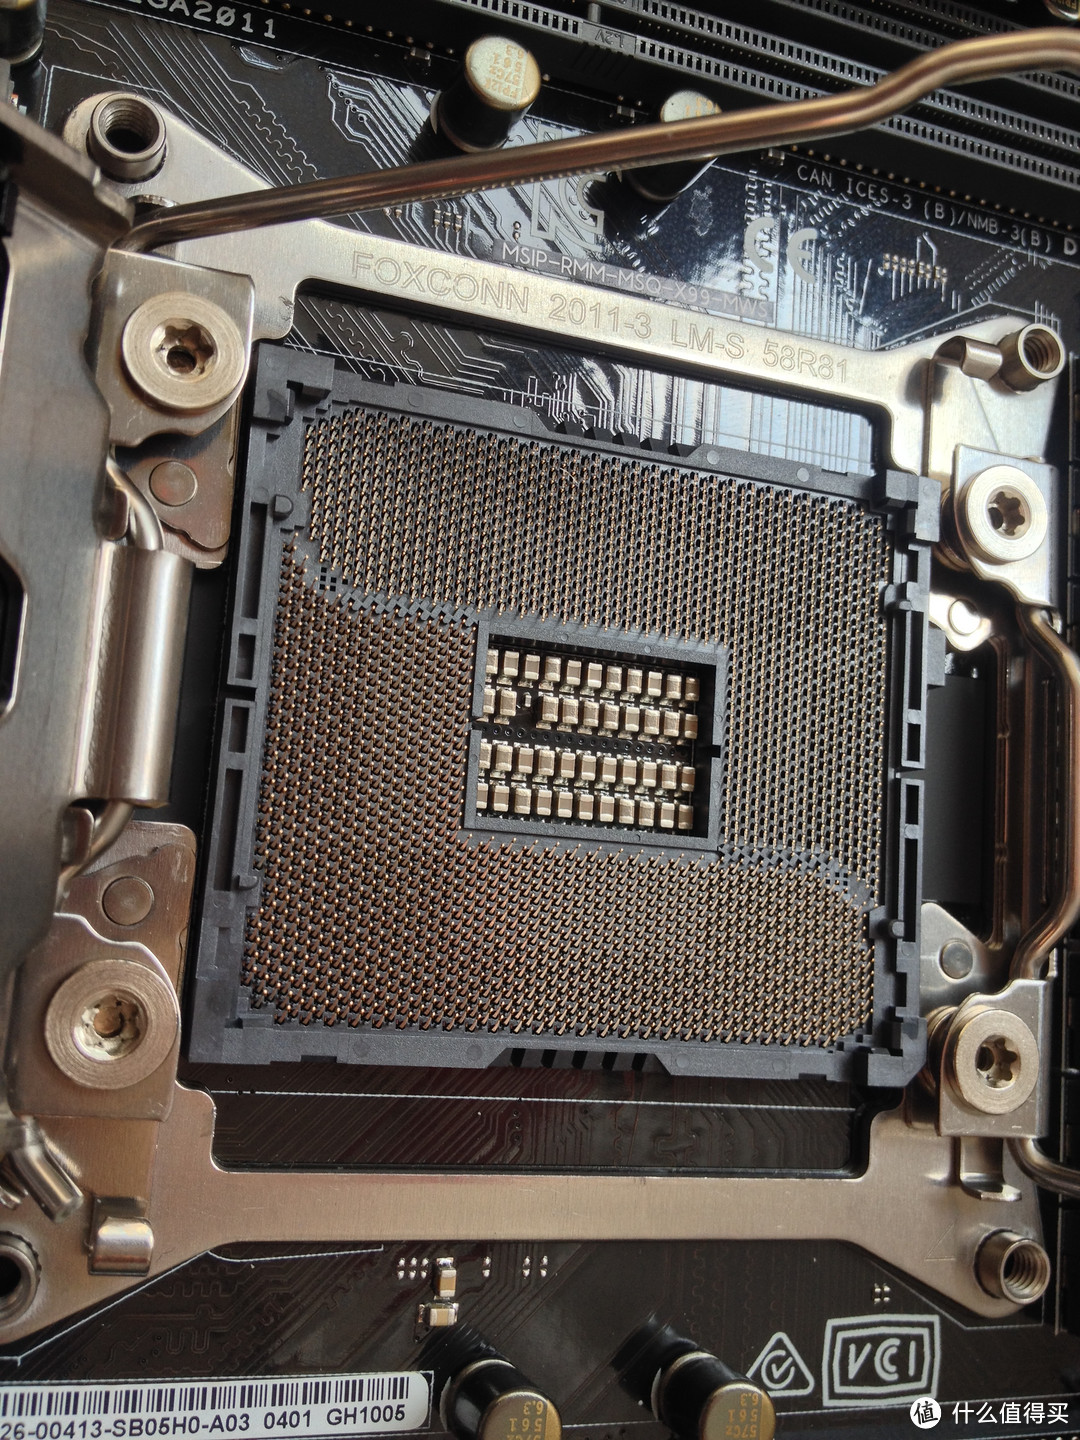 这是阿苏斯和别家X99最大的不同点，率先补齐了针脚的CPU插槽。